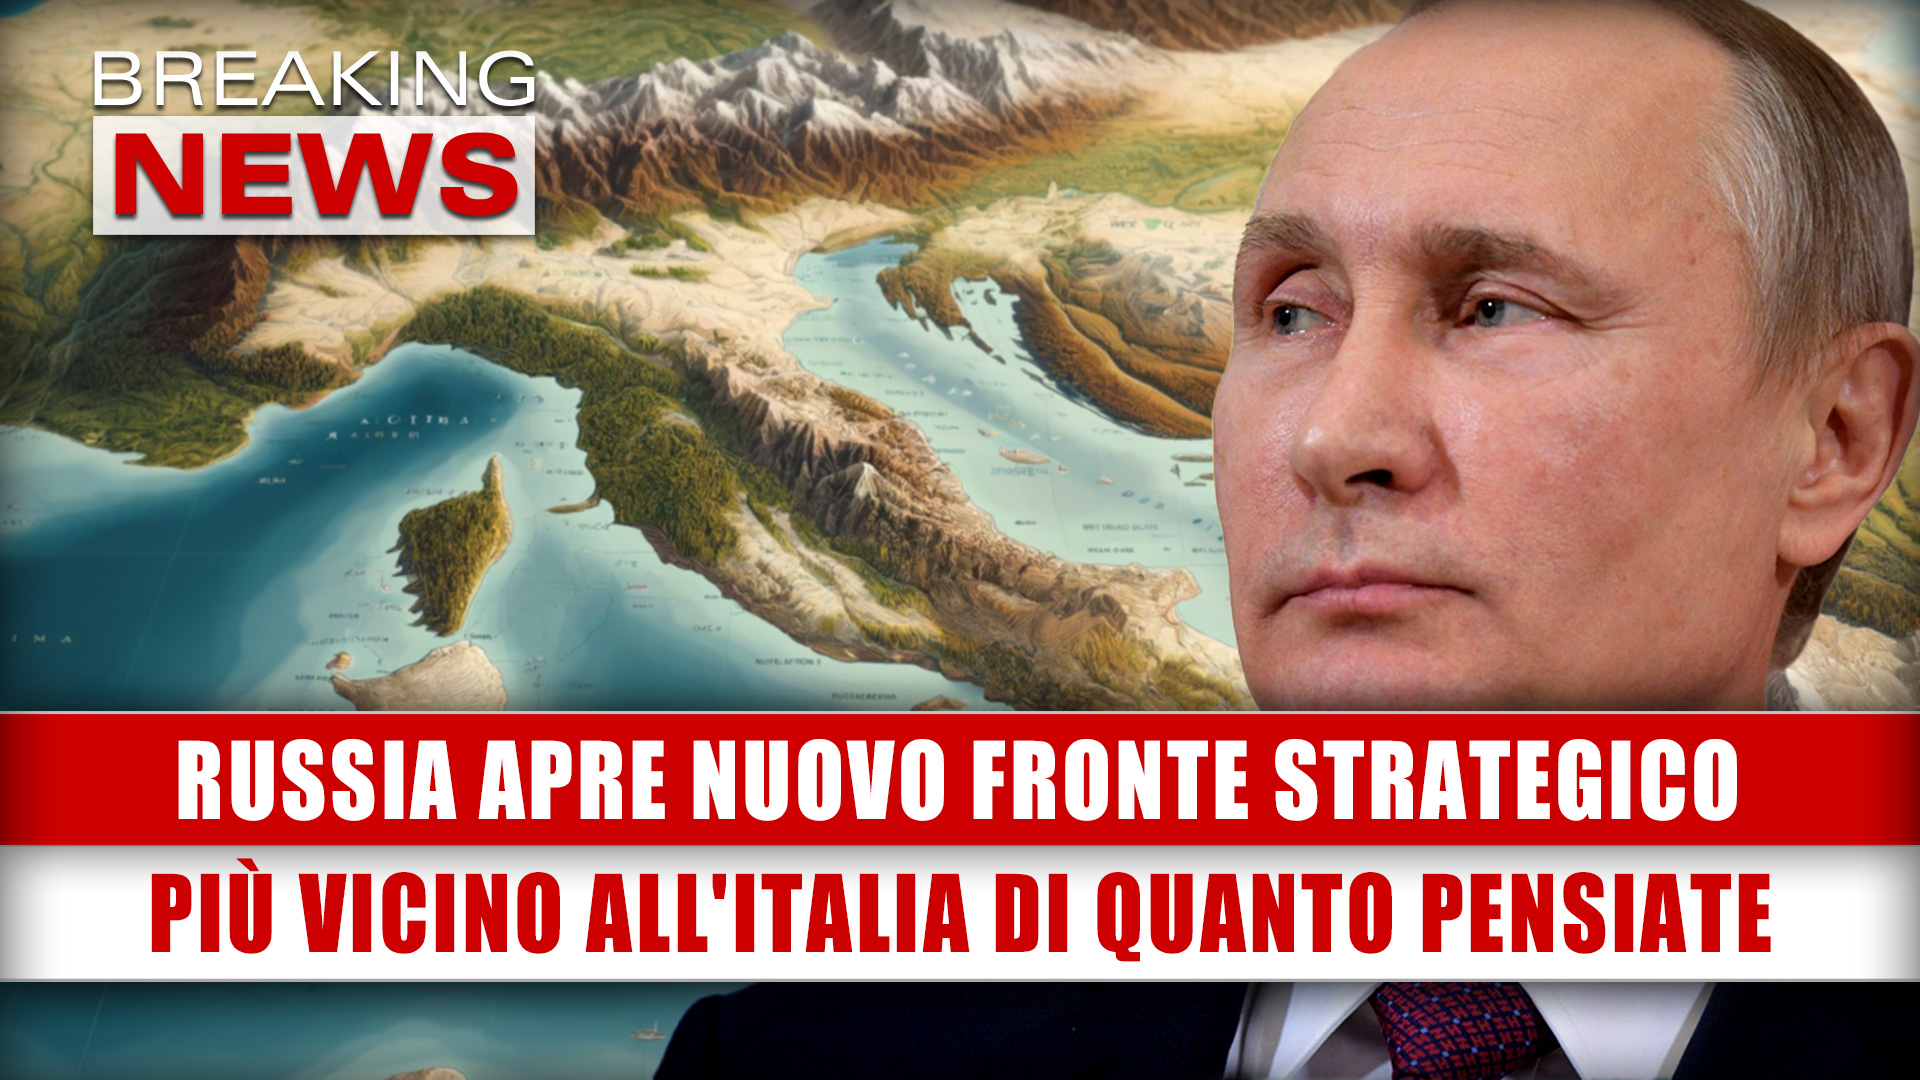 Russia Apre Nuovo Fronte Strategico: Più Vicino All'Italia Di Quanto Pensiate!